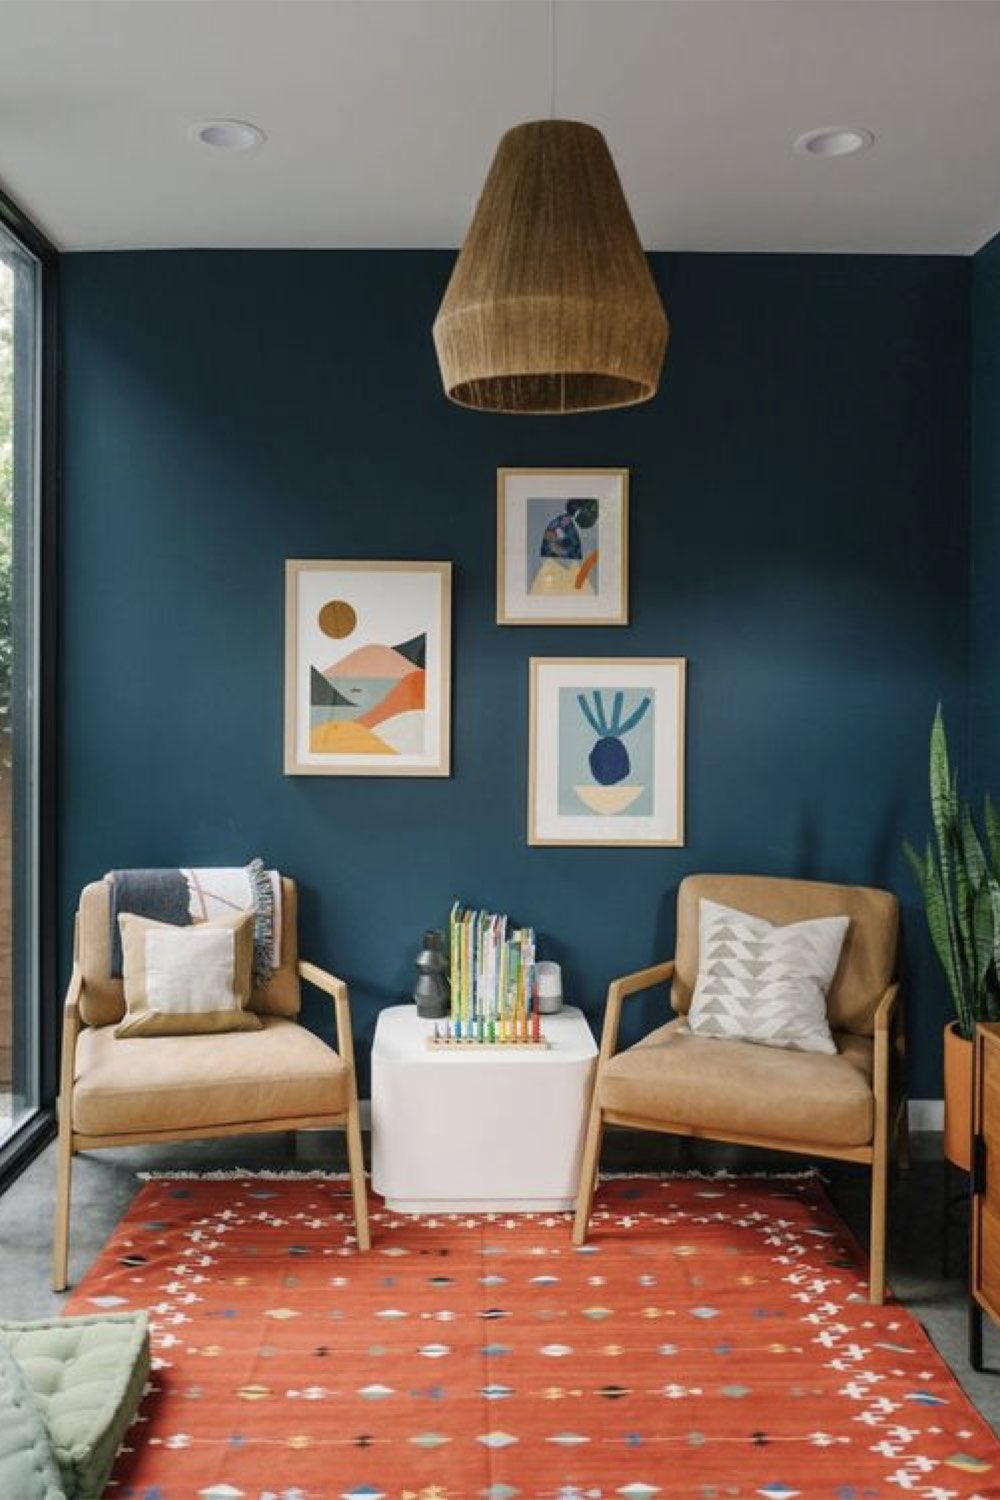 comment reussir deco salon mur peinture vert bleu canard fauteuil vintage tableau mur affiche moderne tapis rouge orangé